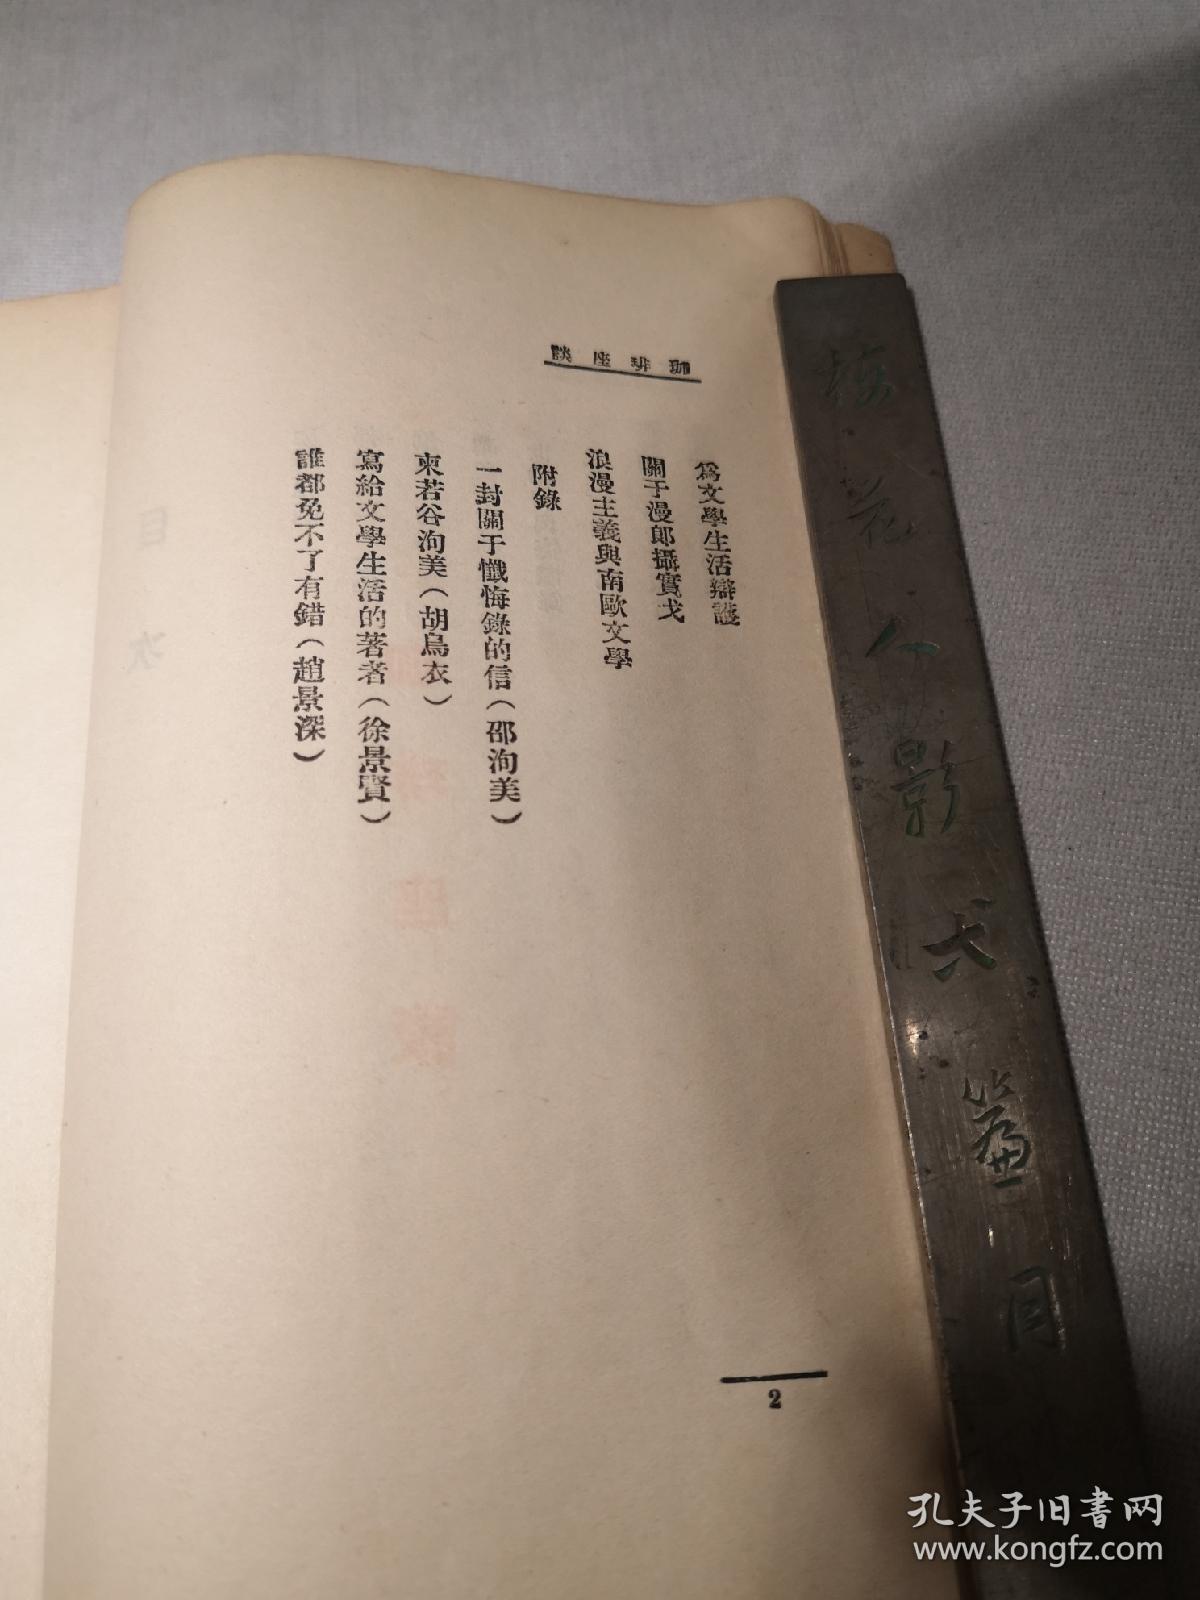 民国新文学珍本,1929年初版张若谷散文集《咖啡座谈》